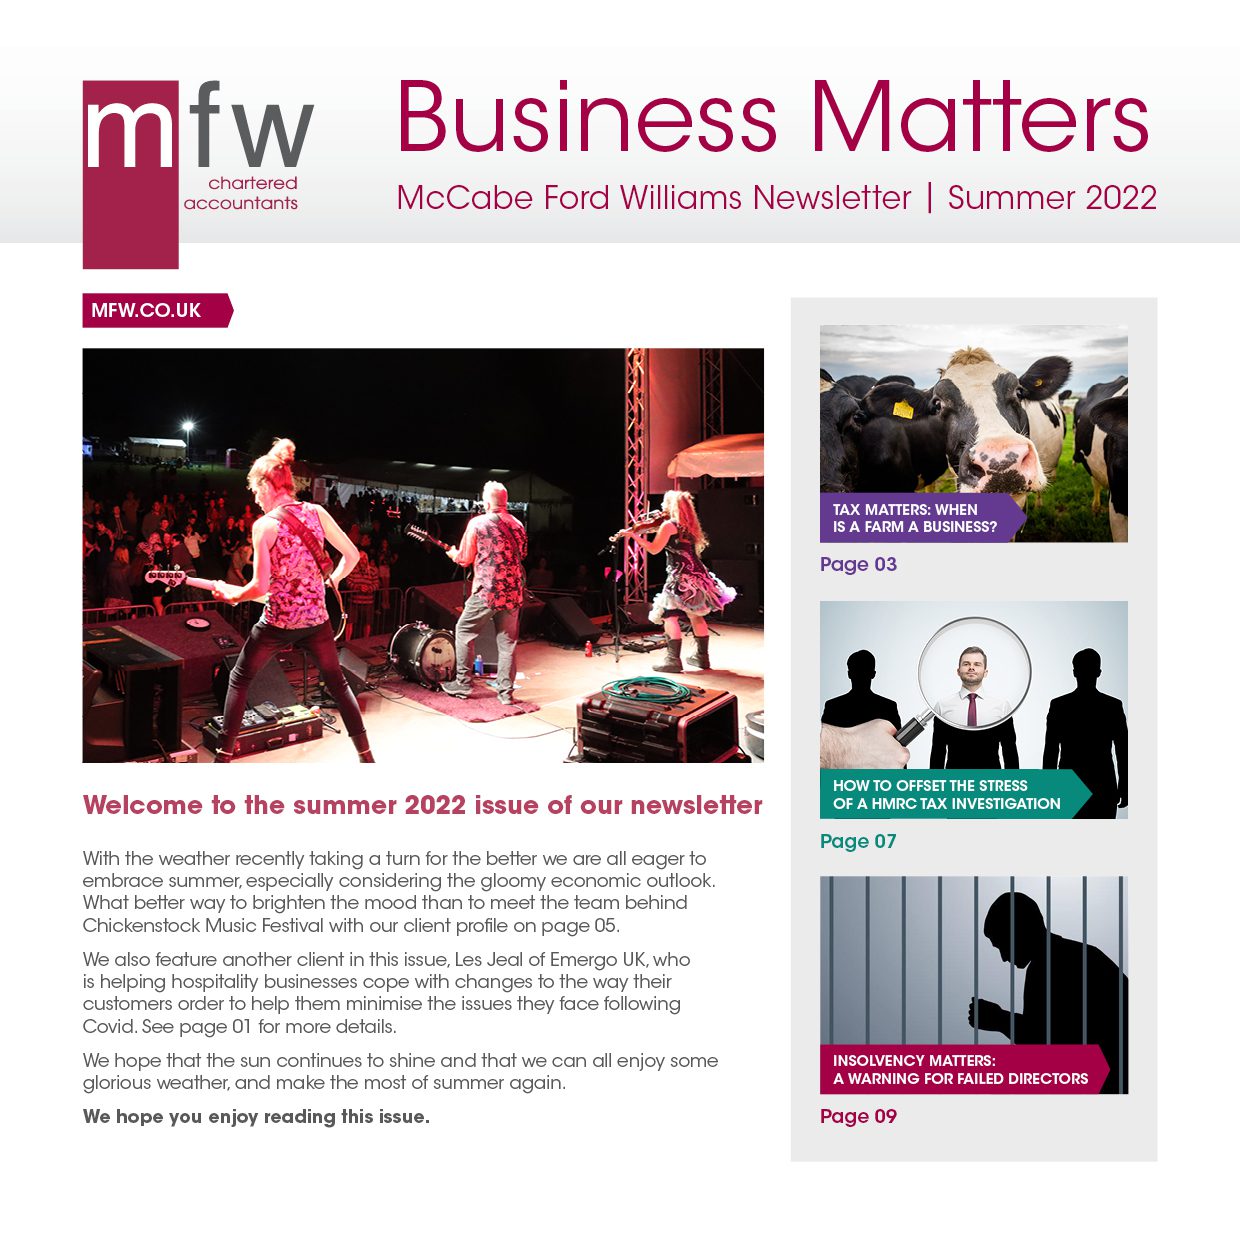 MFW Business Matters newsletter summer 2022